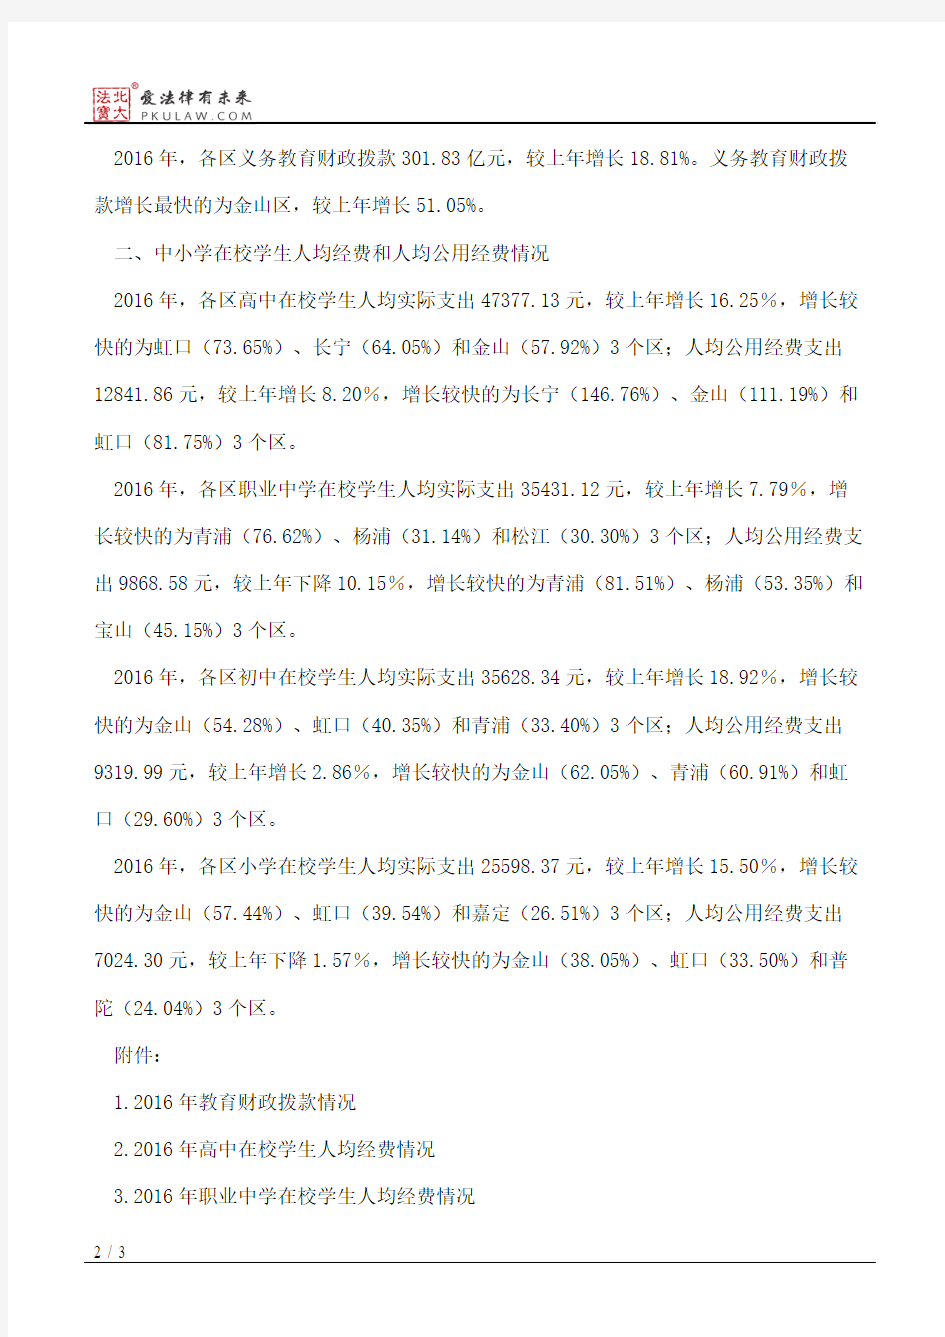 上海市教育委员会、上海市统计局、上海市财政局关于2016年上海市